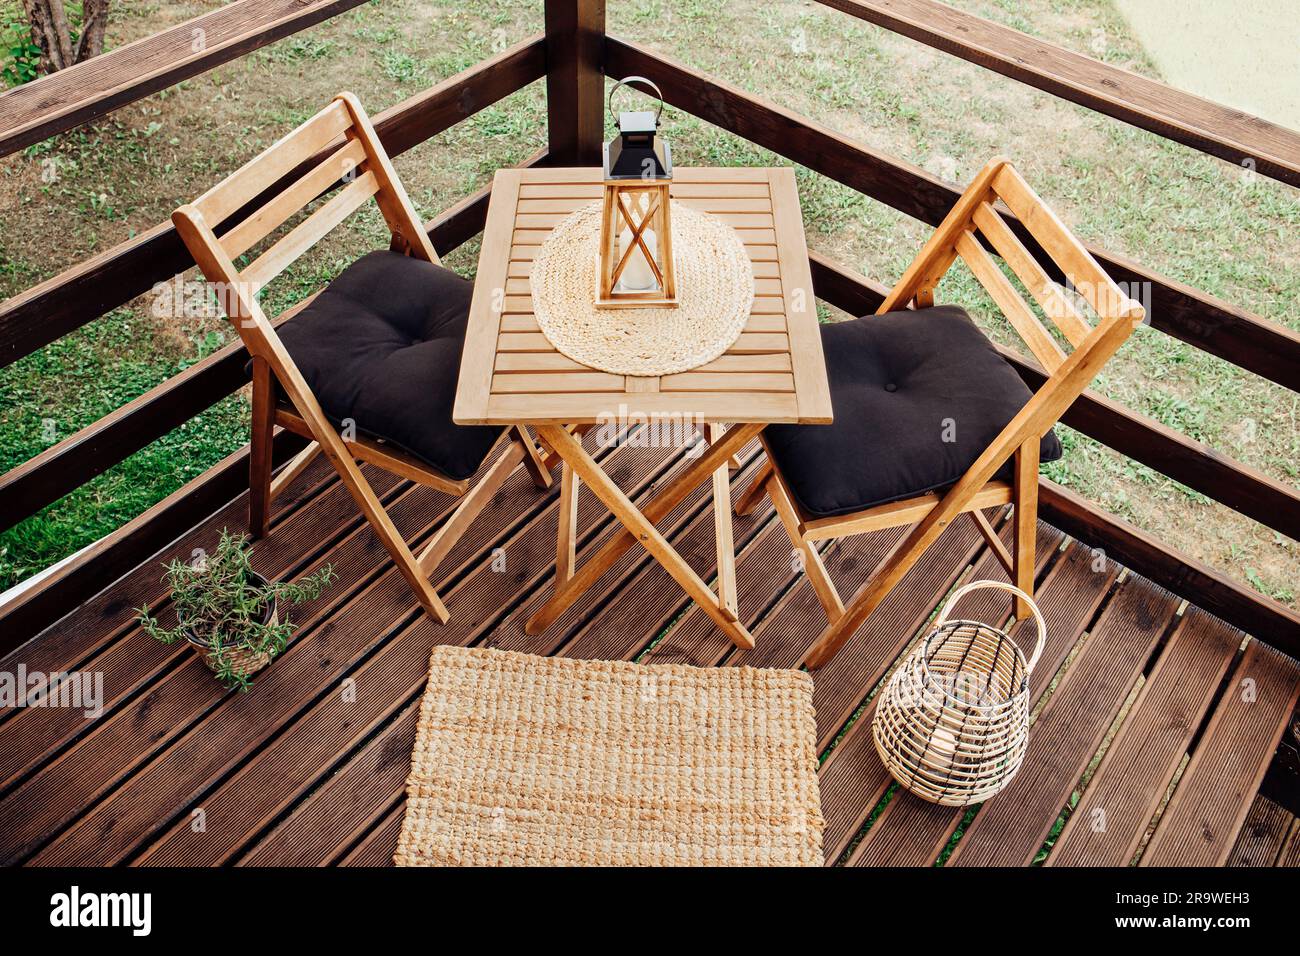 Moderner, kleiner Holzbalkon mit Sitzecke, Gartenmöbeln aus Holz, weichen schwarzen Kissen, Laterne mit brennender Kerze auf dem Tisch im Freien. Stockfoto